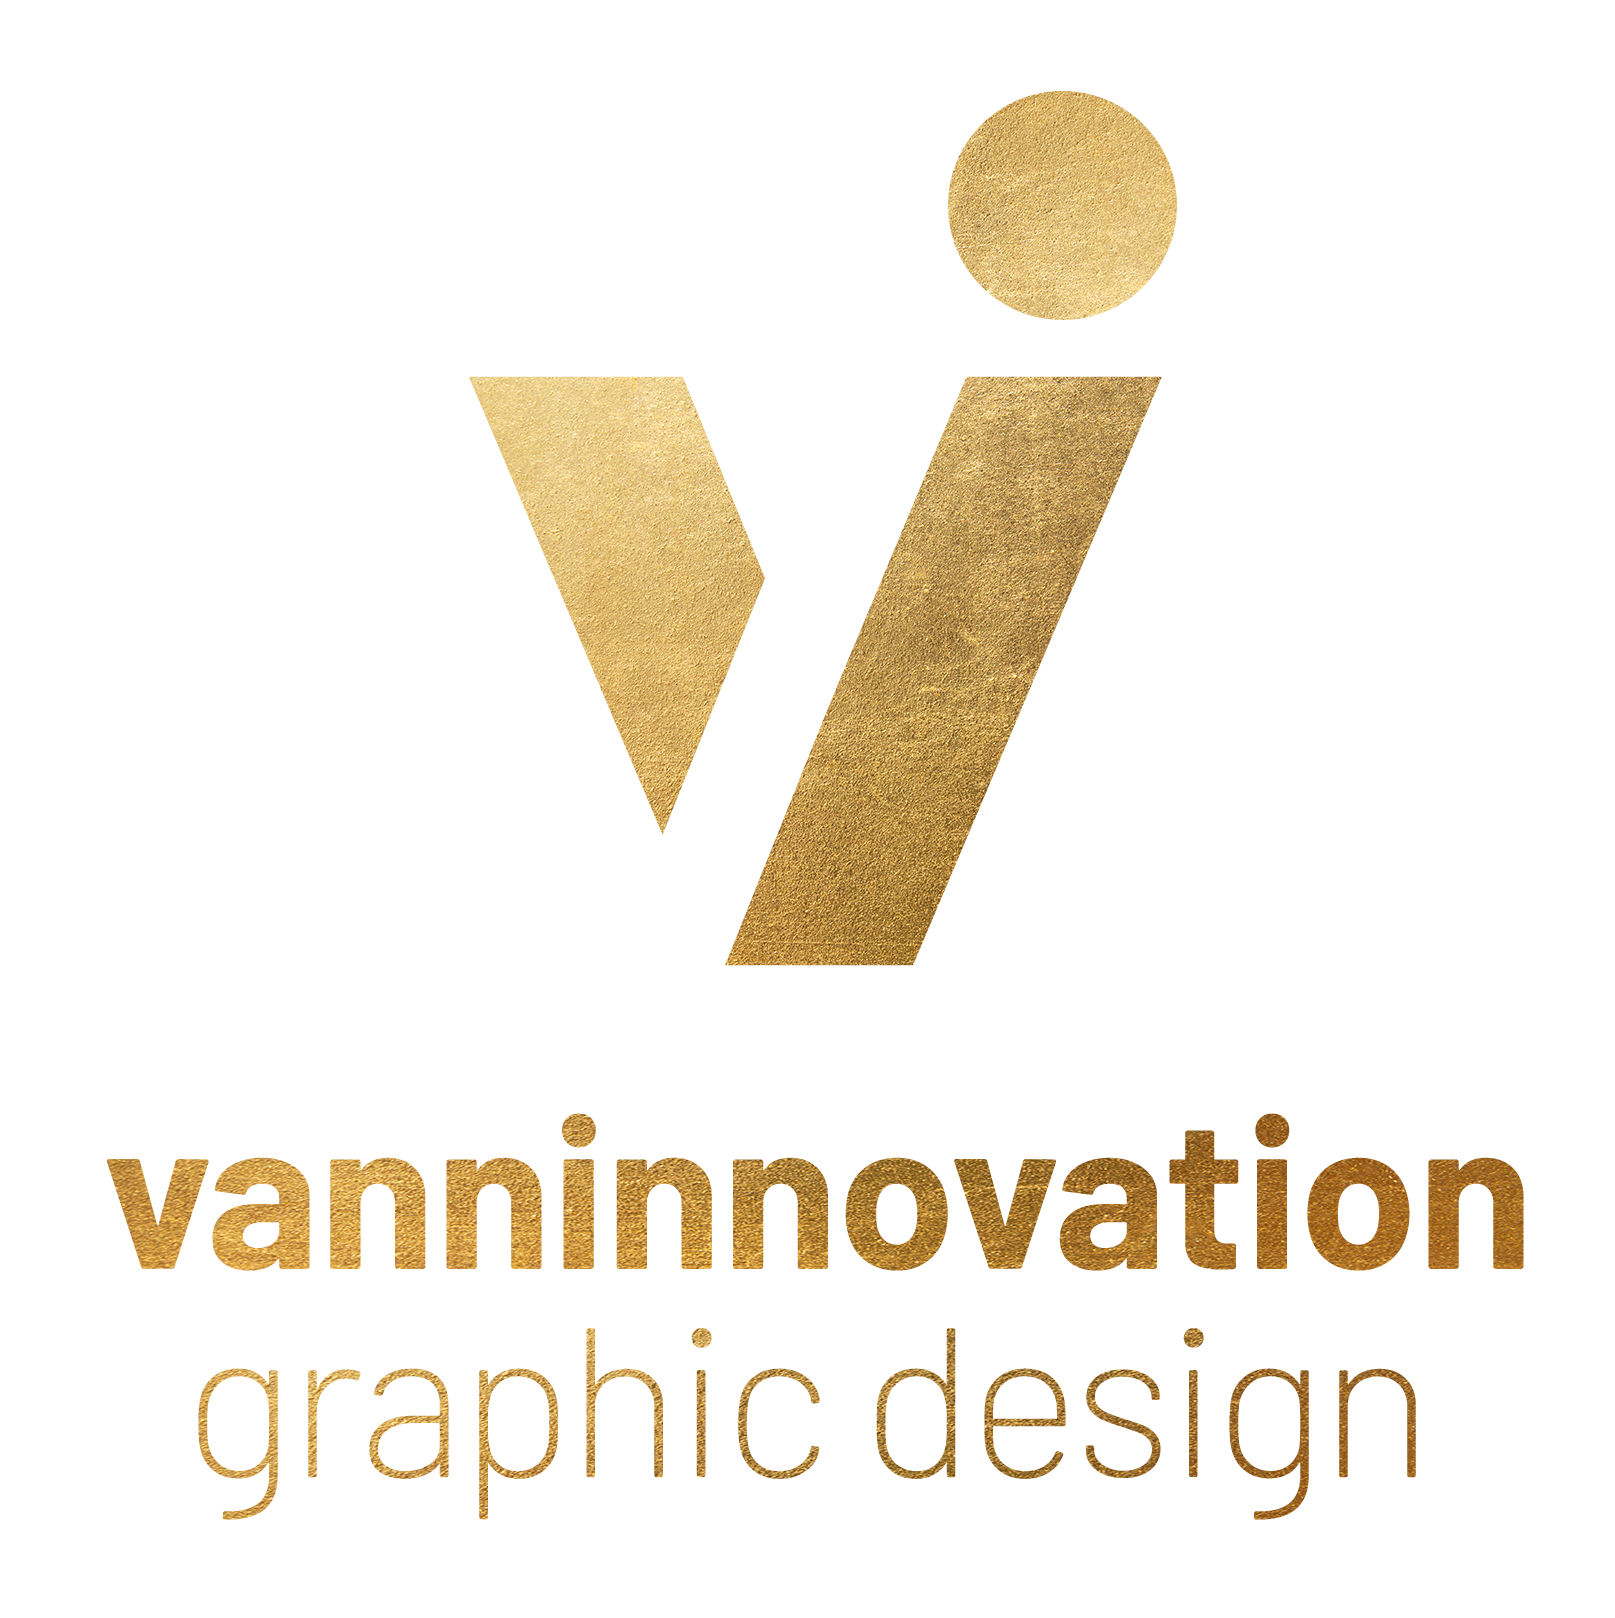 Elianna Vann, Graphic Designer